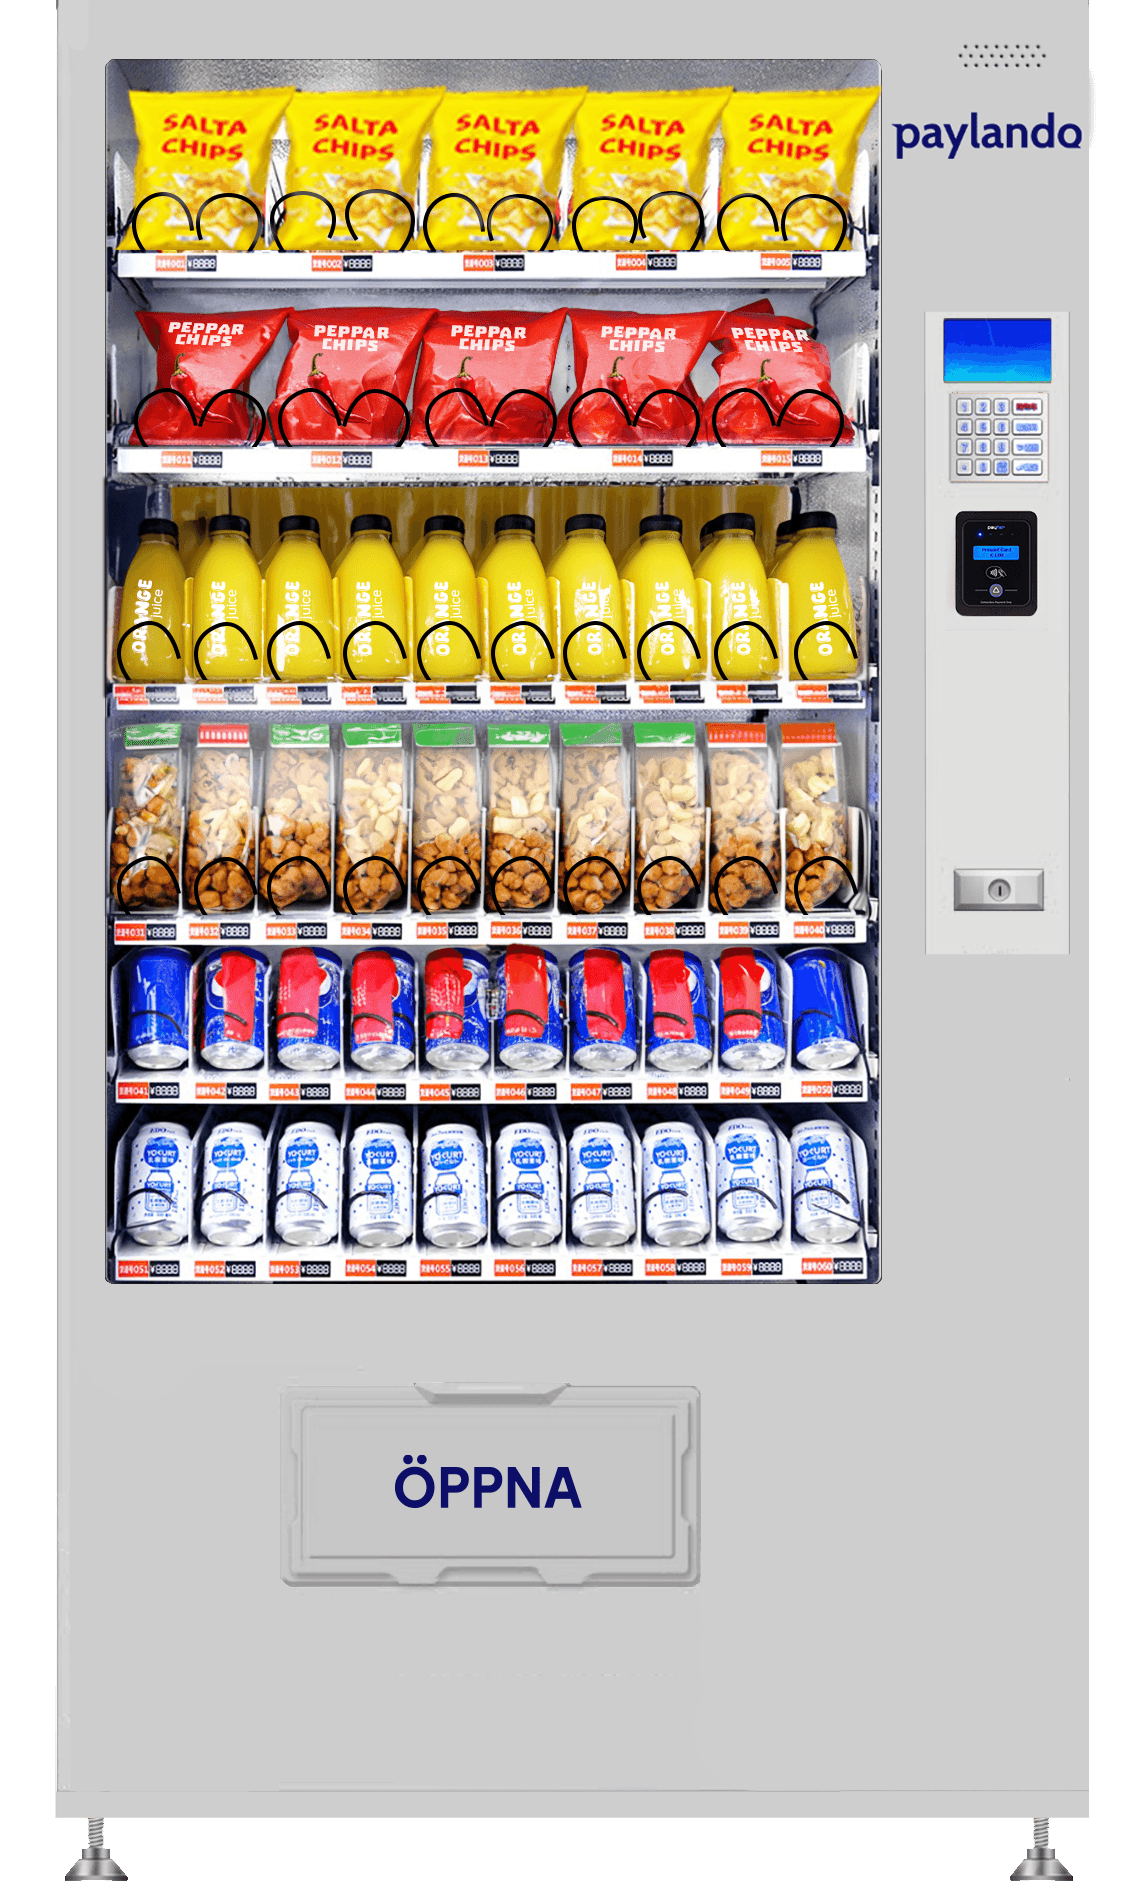 Paylando Versa: Kyld varuautomat med knappsats